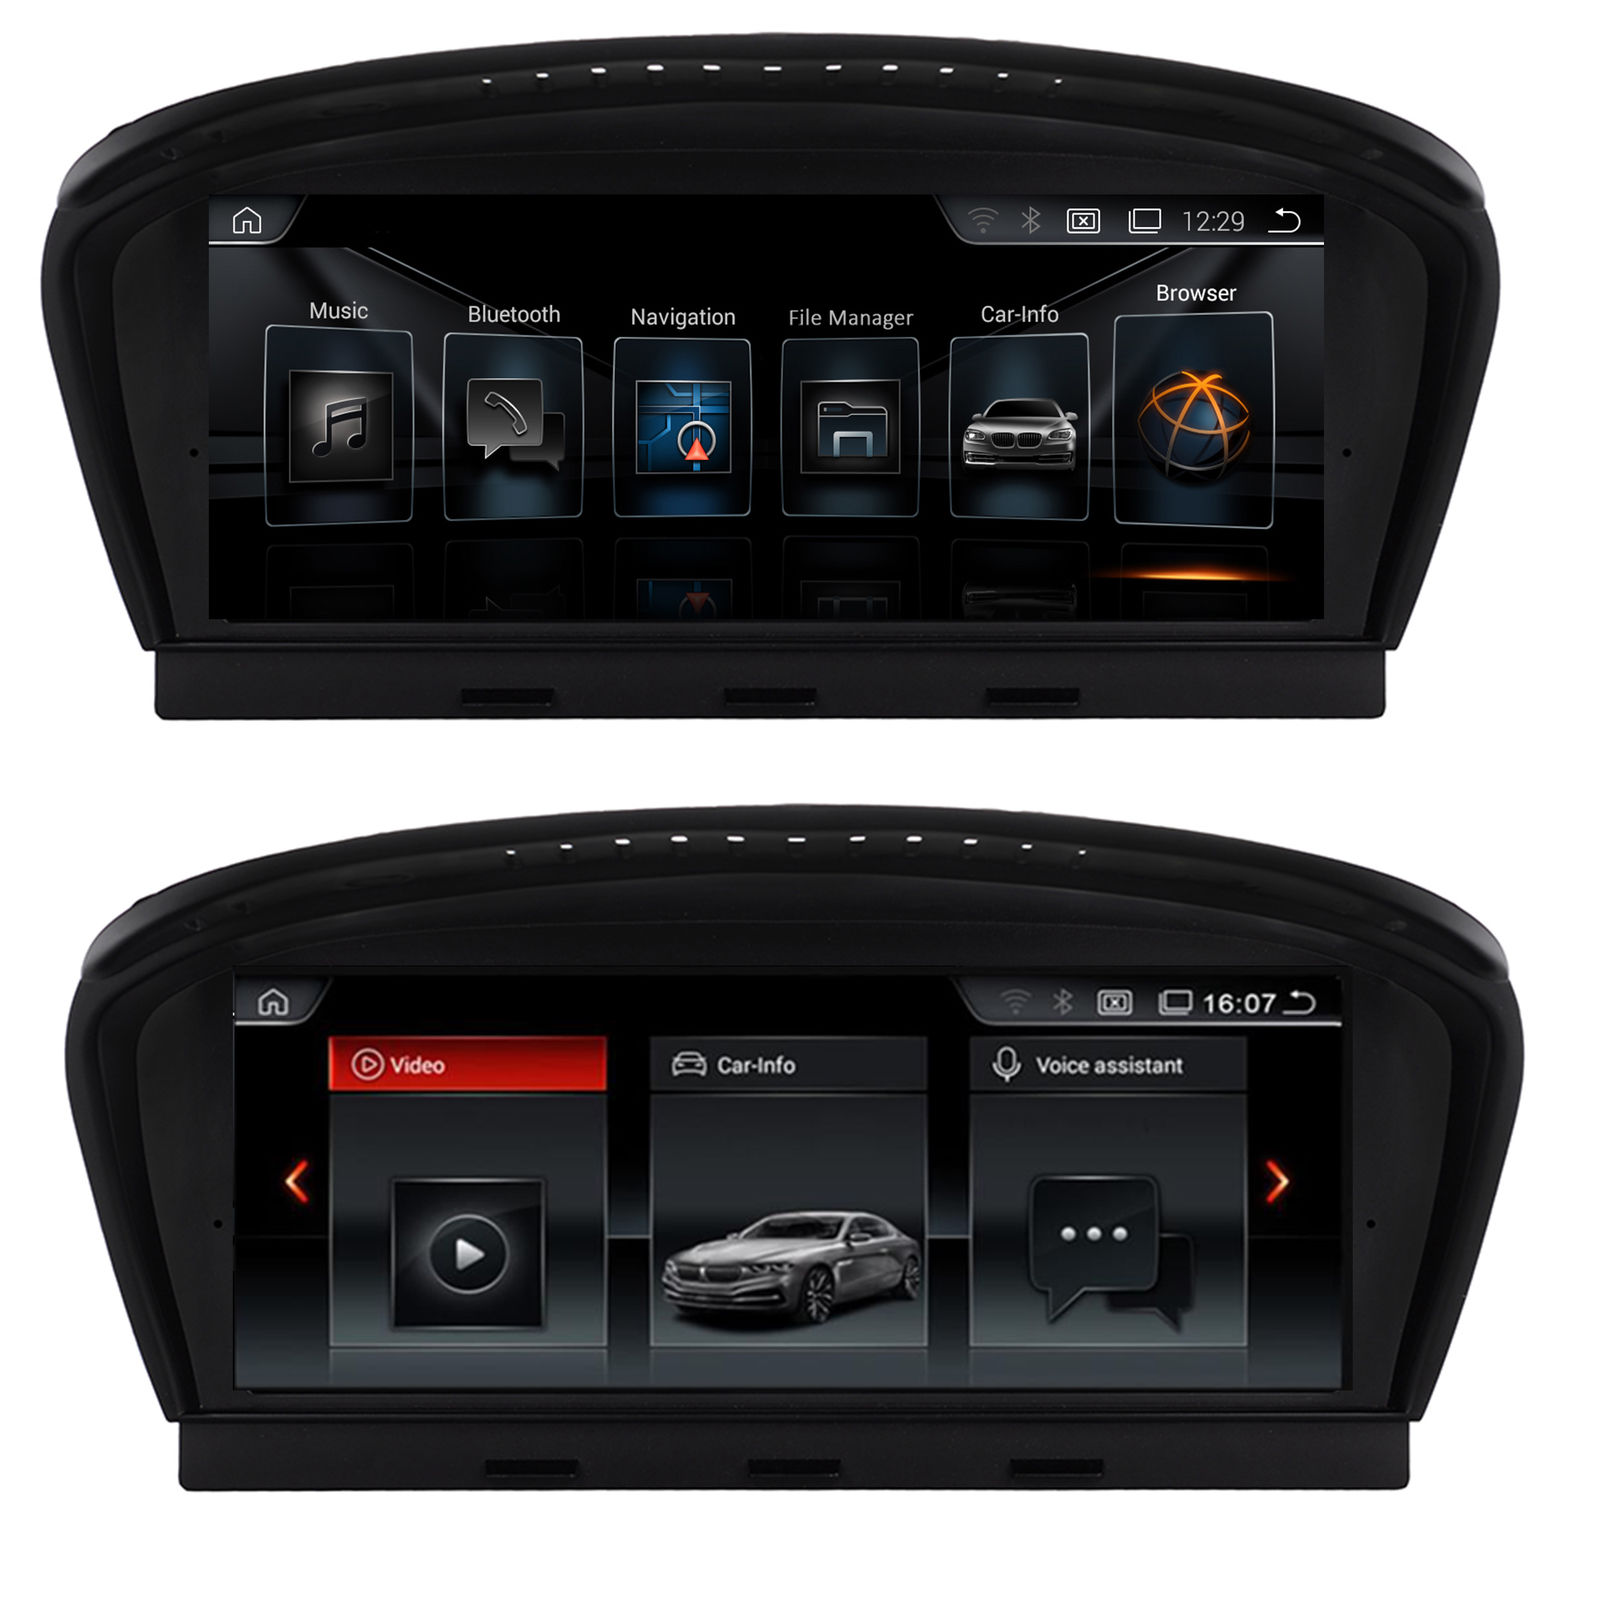 Autoradio AGW92 GPS WIFI Bluetooth USB SD pour BMW srie 5 E60 E61 M5 srie 6 E63 E64 M6 et srie 3 E90 E91 E92 E93 M3 (processeur 2GHZ)